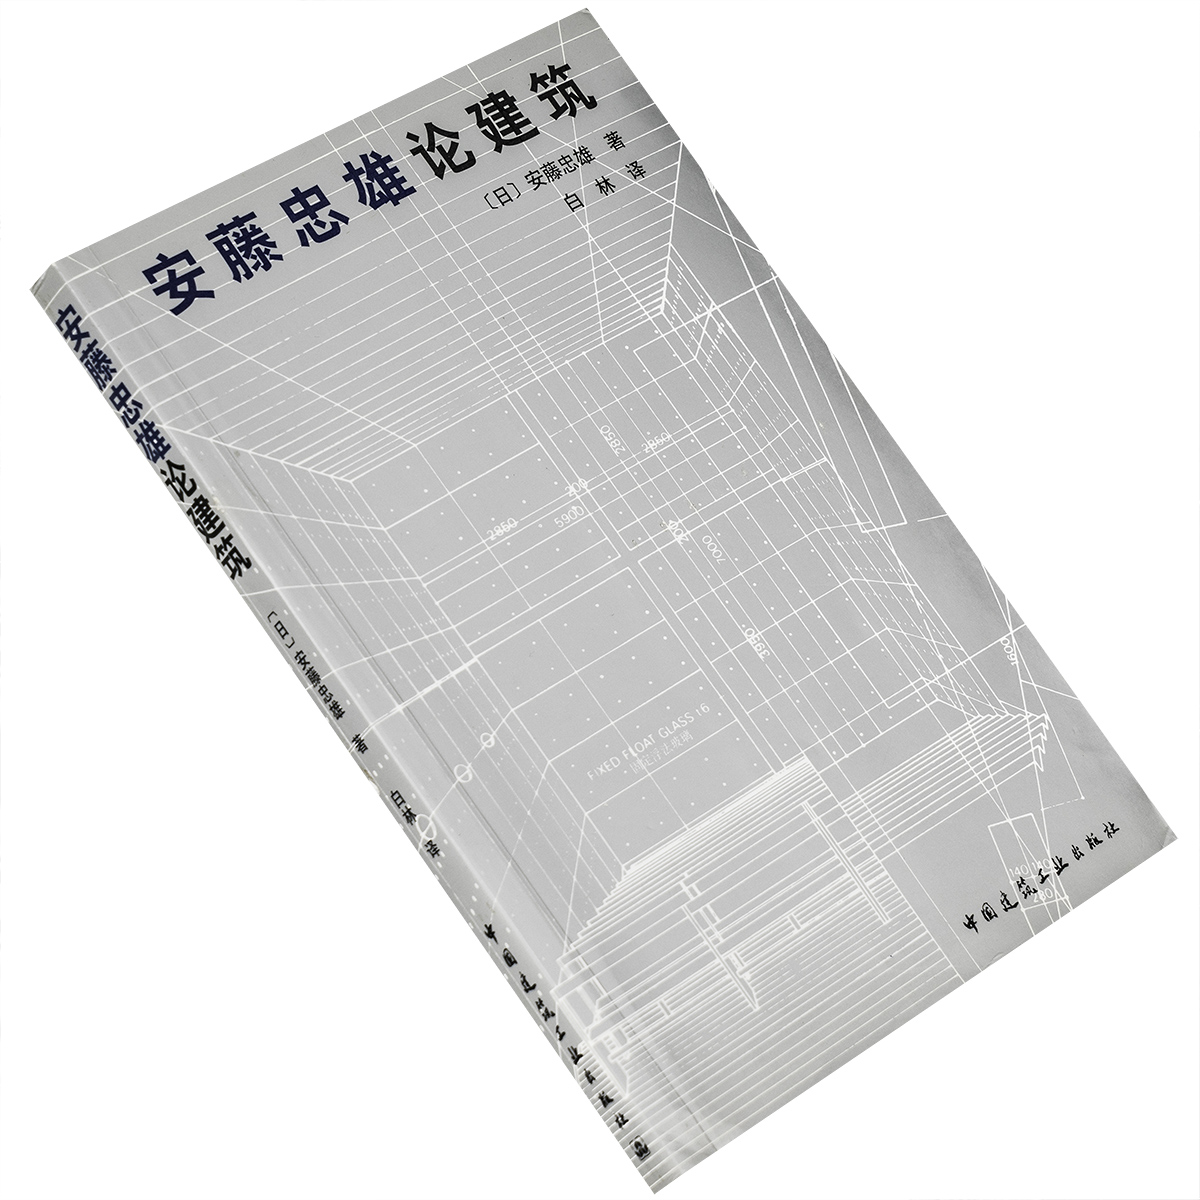 安藤忠雄论建筑 中国建筑工业出版社 建筑艺术 正版书籍 老版